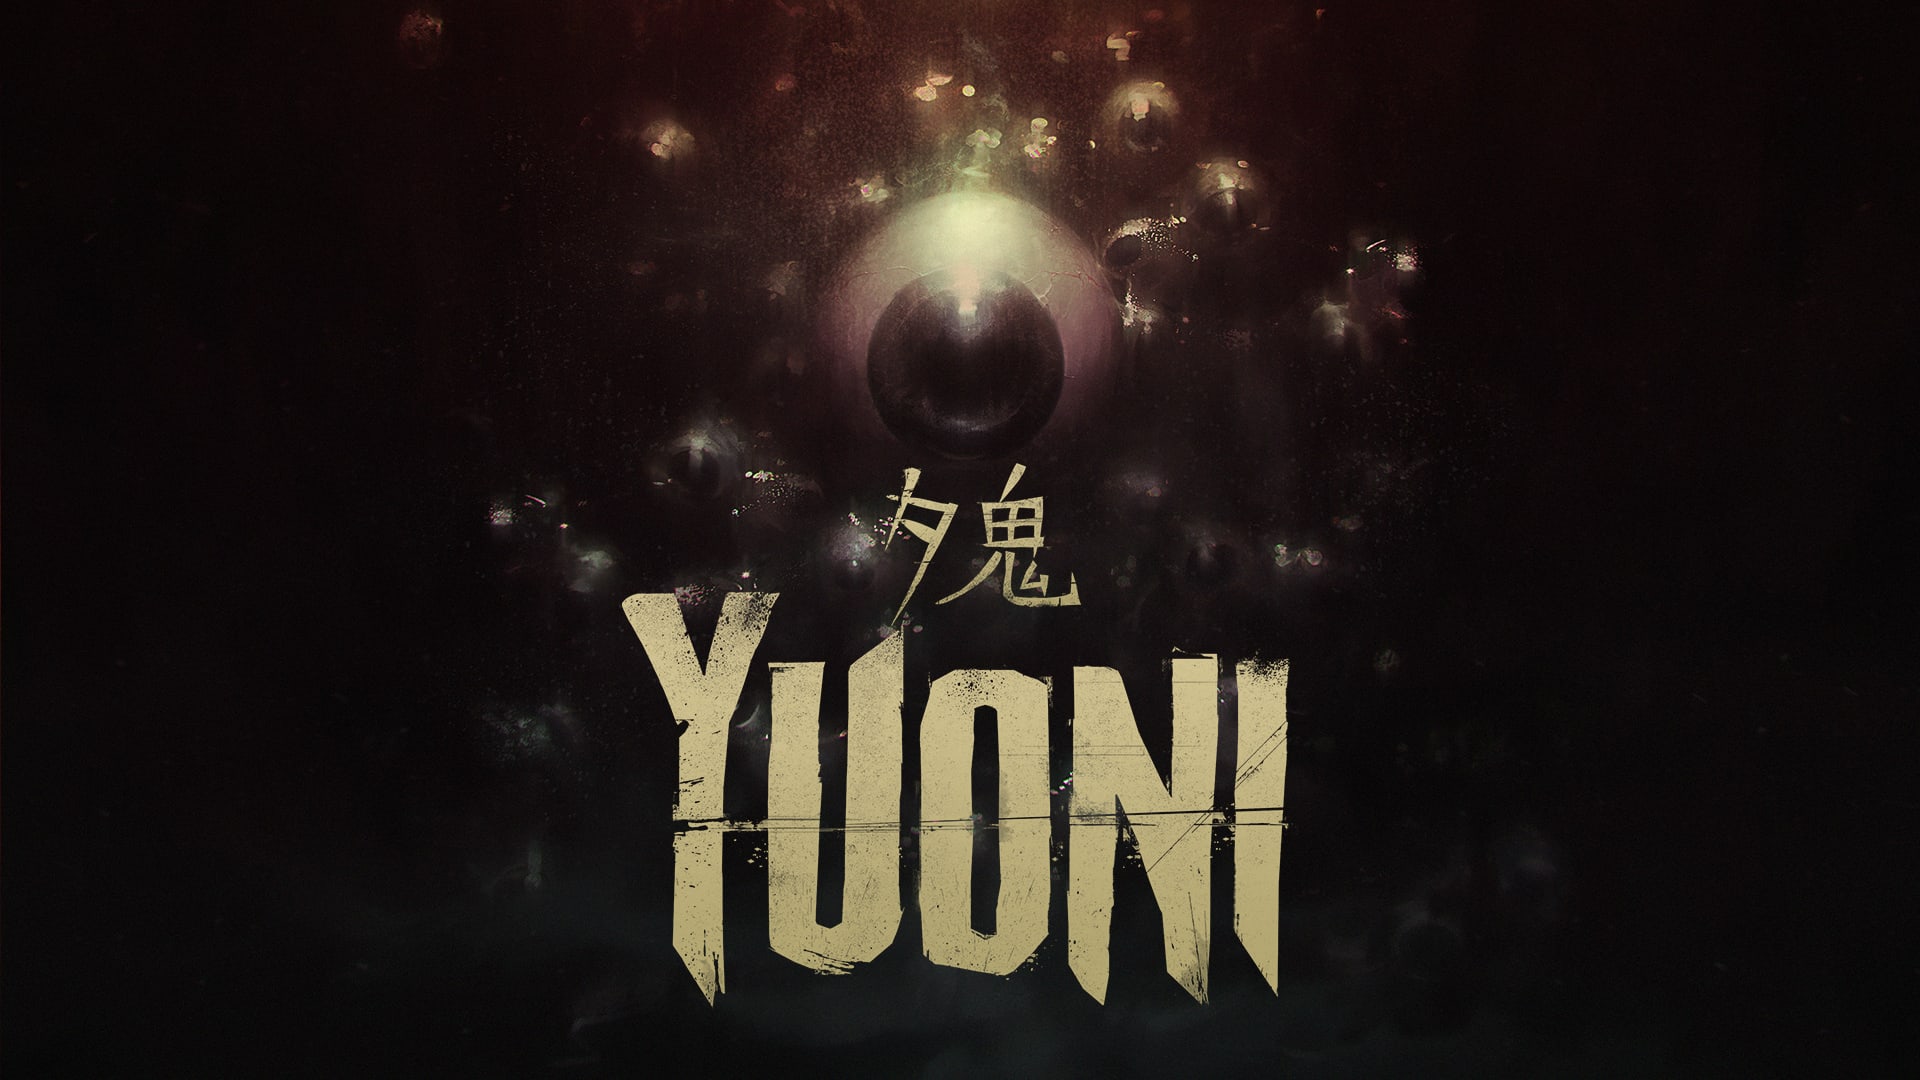 Yuoni